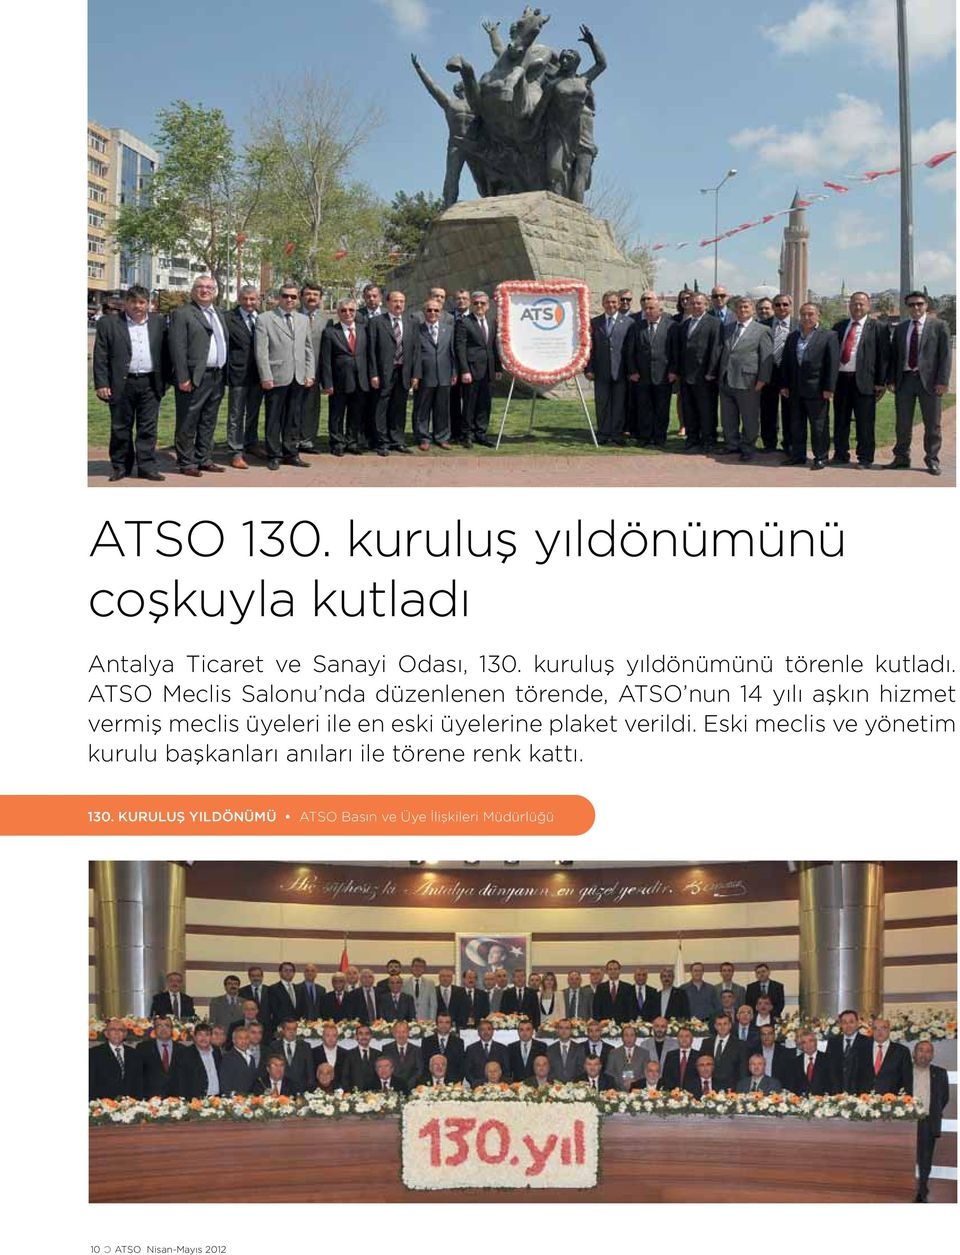 ATSO Meclis Salonu nda düzenlenen törende, ATSO nun 14 yılı aşkın hizmet vermiş meclis üyeleri ile en